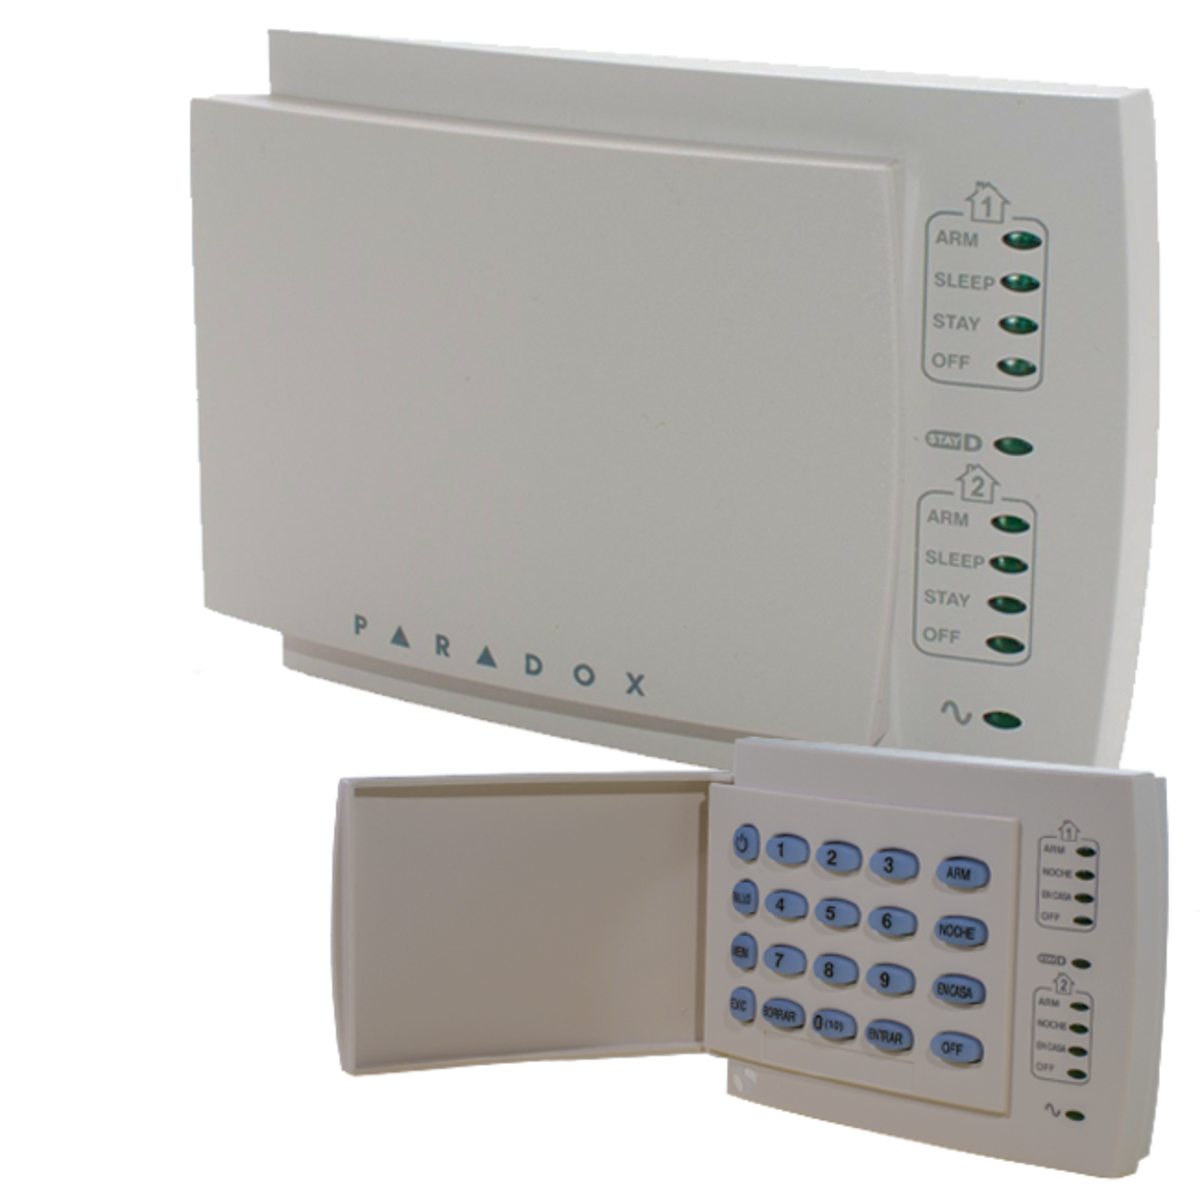 Module de clavier LED - K10H - Alarme Caméra Surveillance (ACS) 